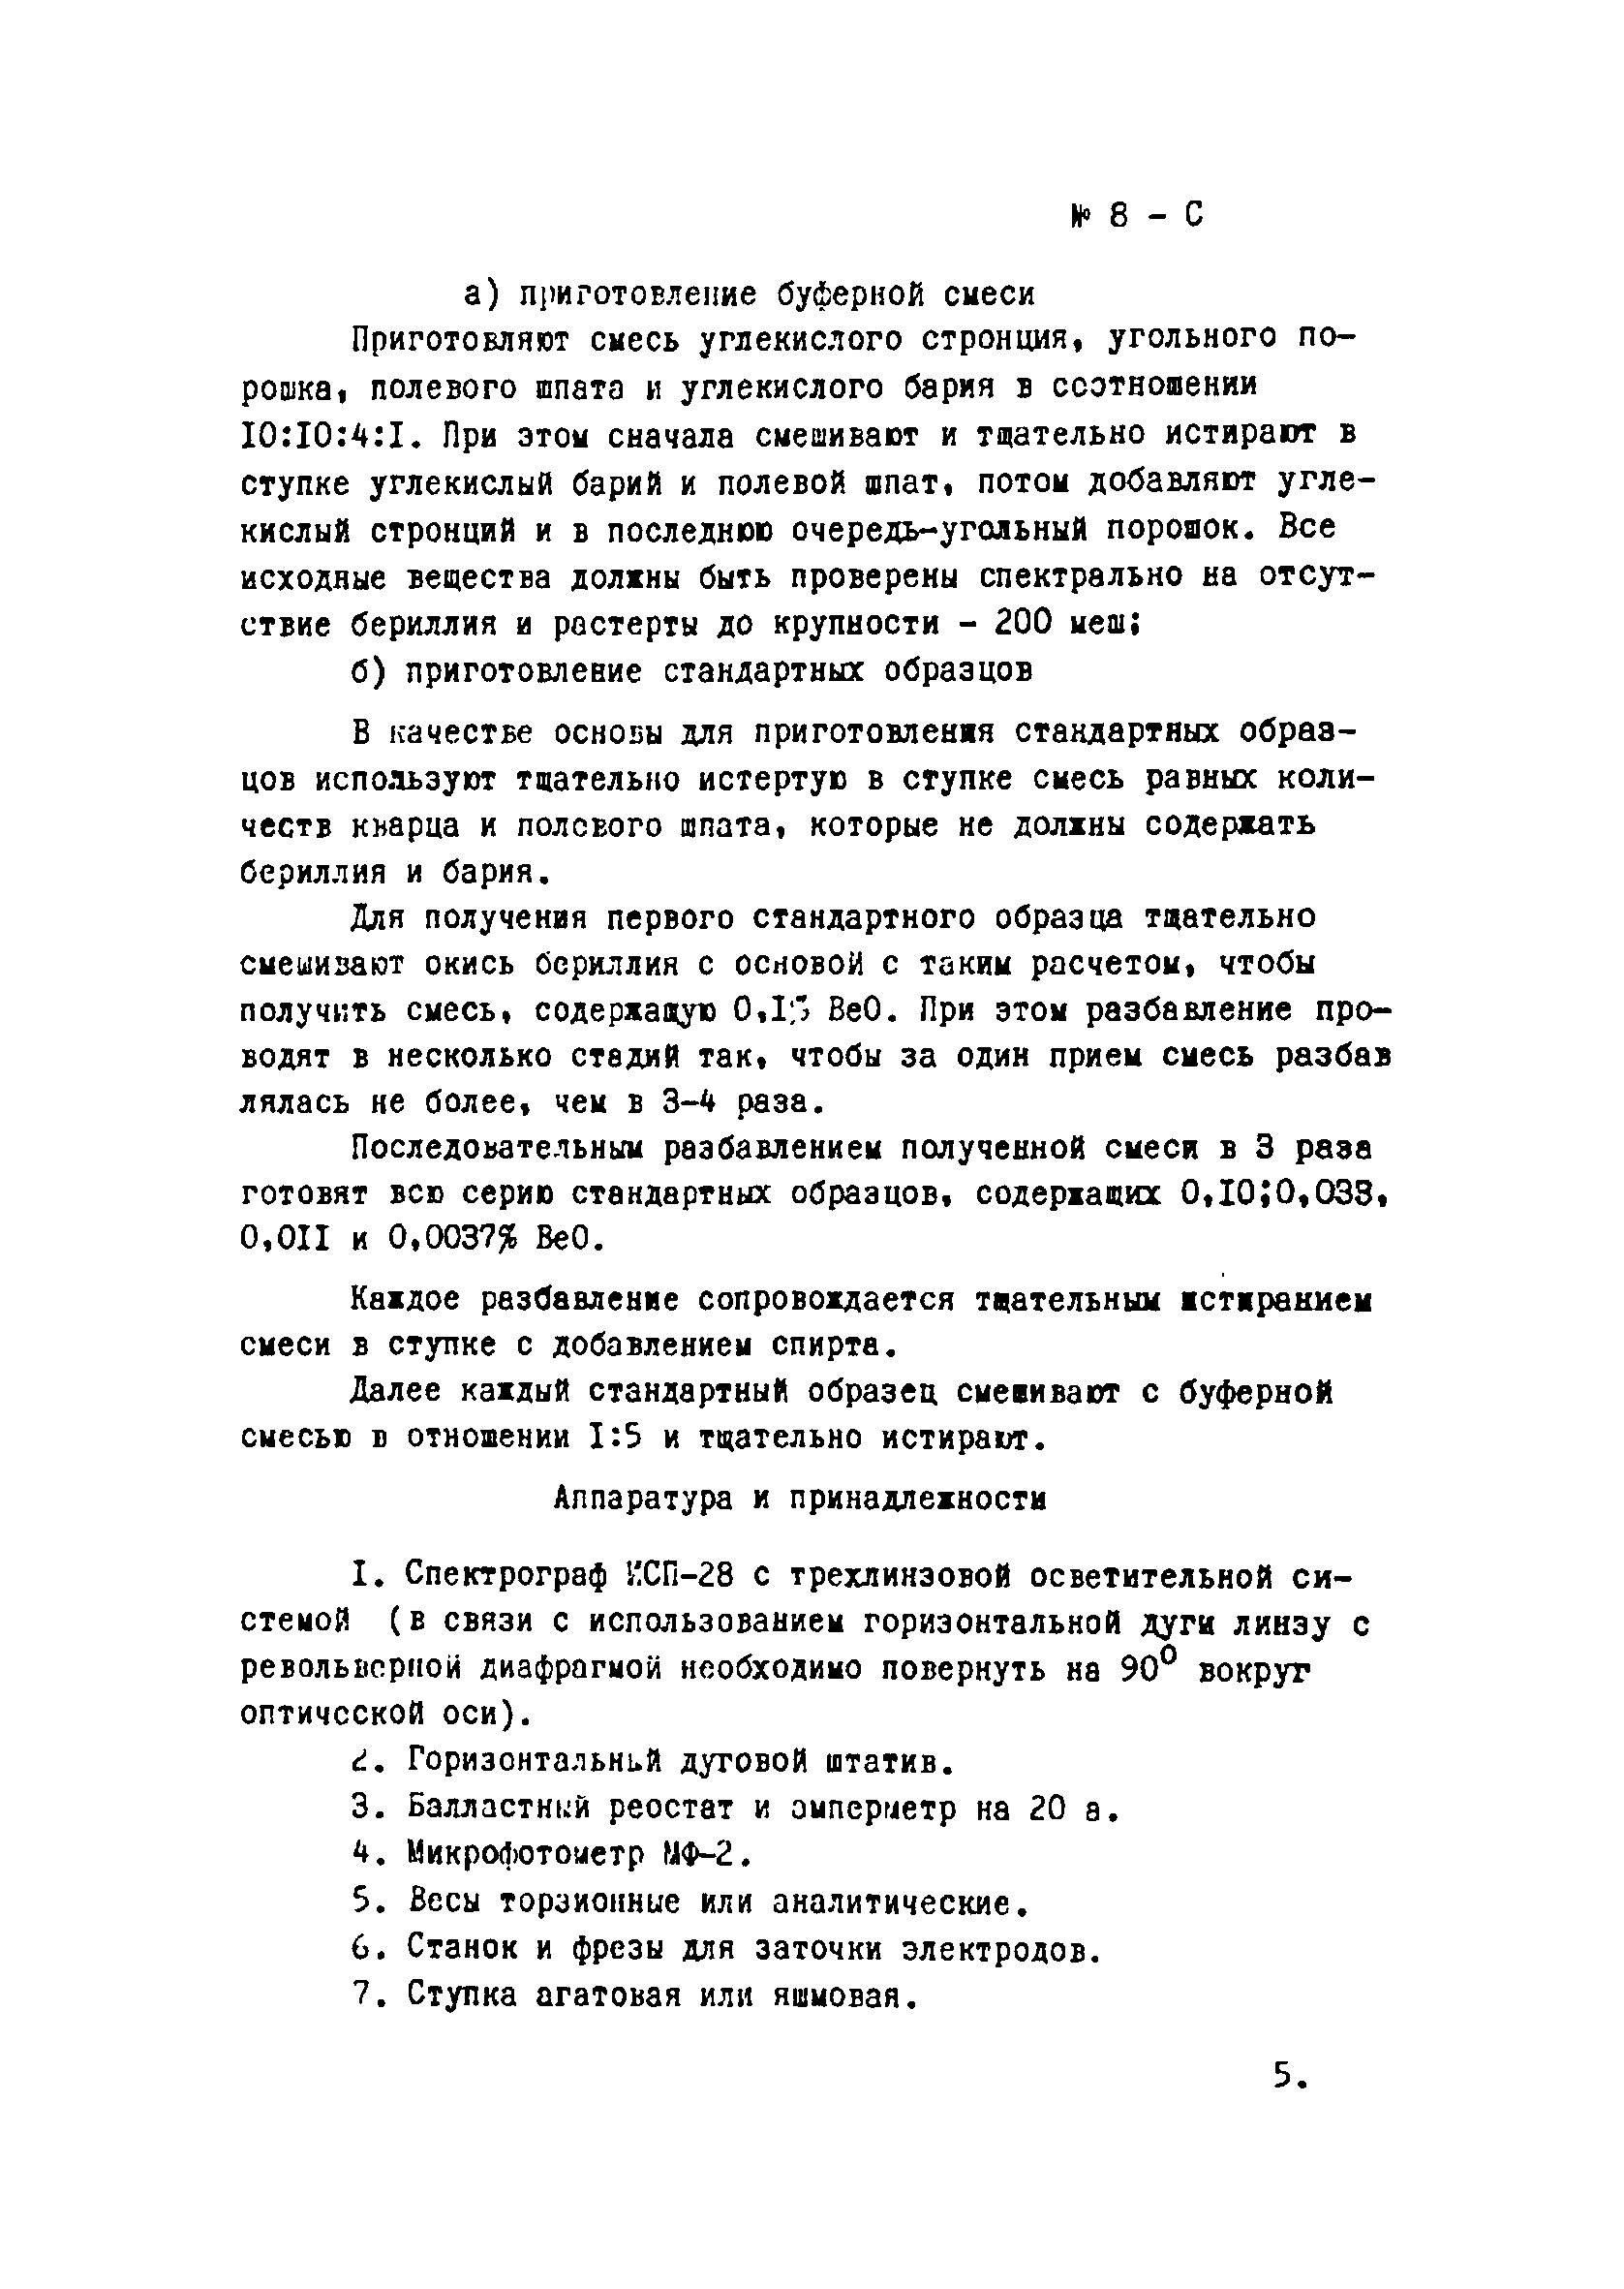 Инструкция НСАМ 8-С